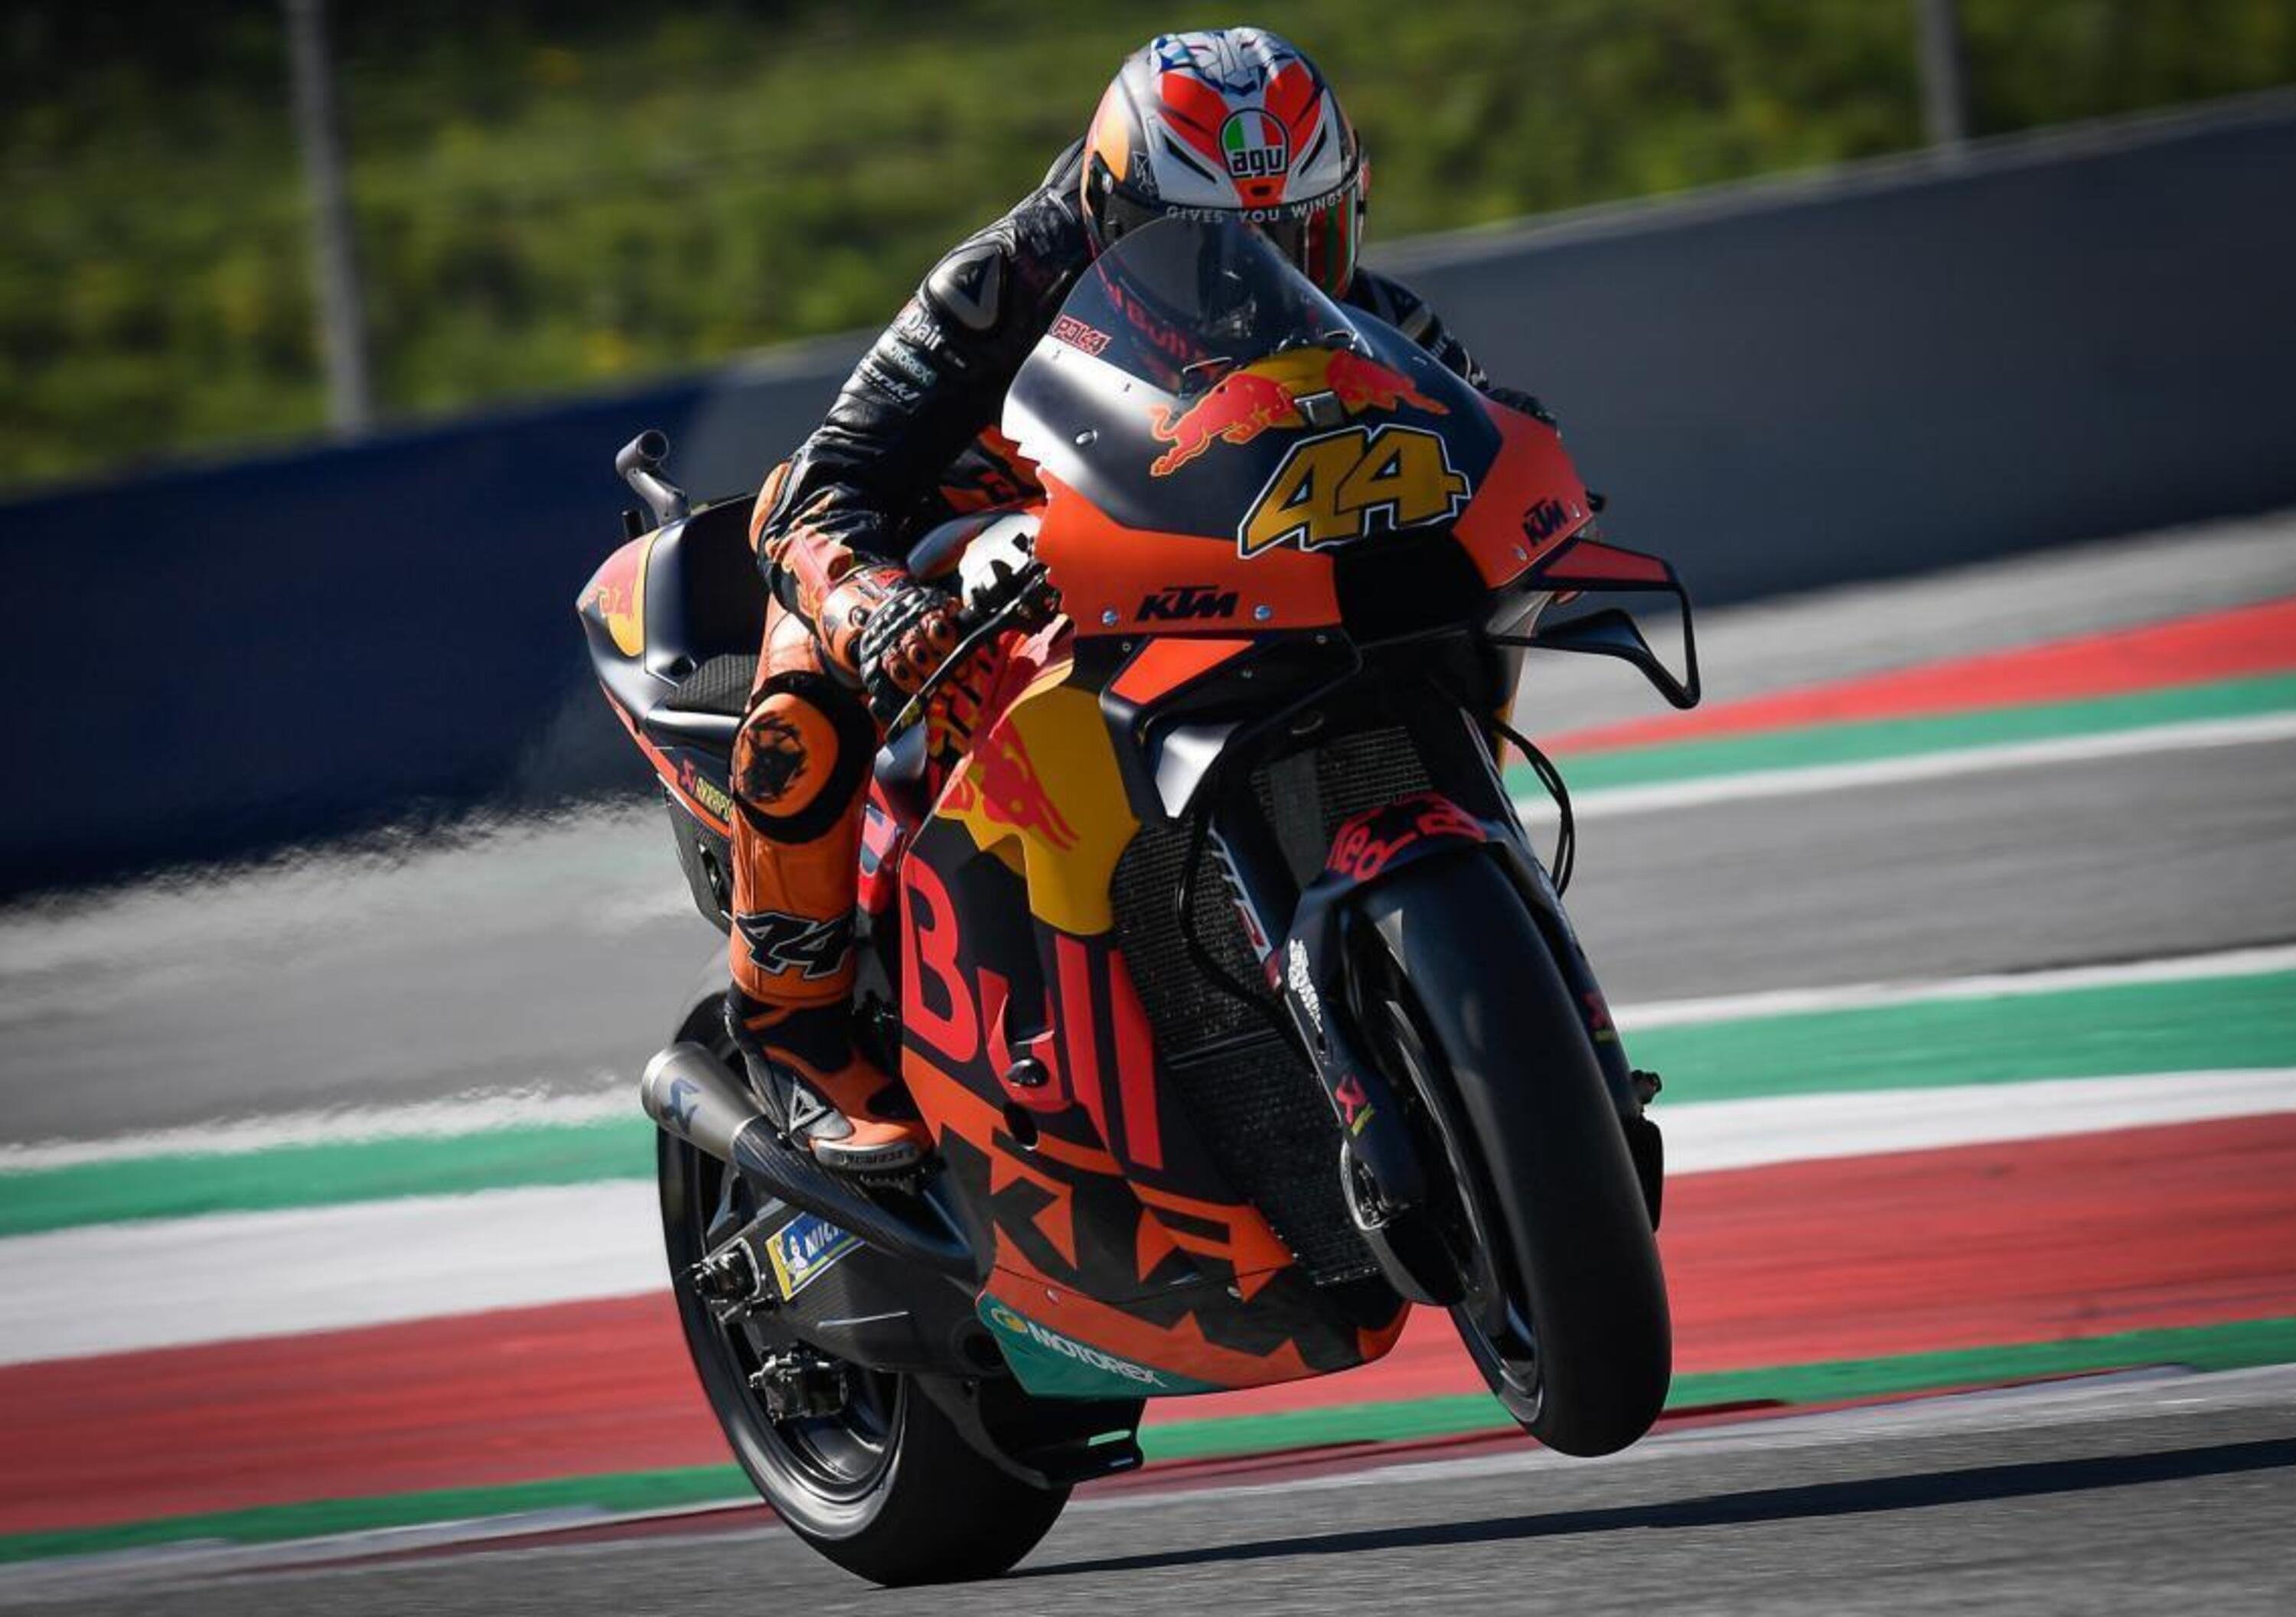 MotoGP 2020. GP di Stiria. Davide Brivio: &ldquo;Espargaro non punito perch&eacute; siamo in Austria&rdquo;